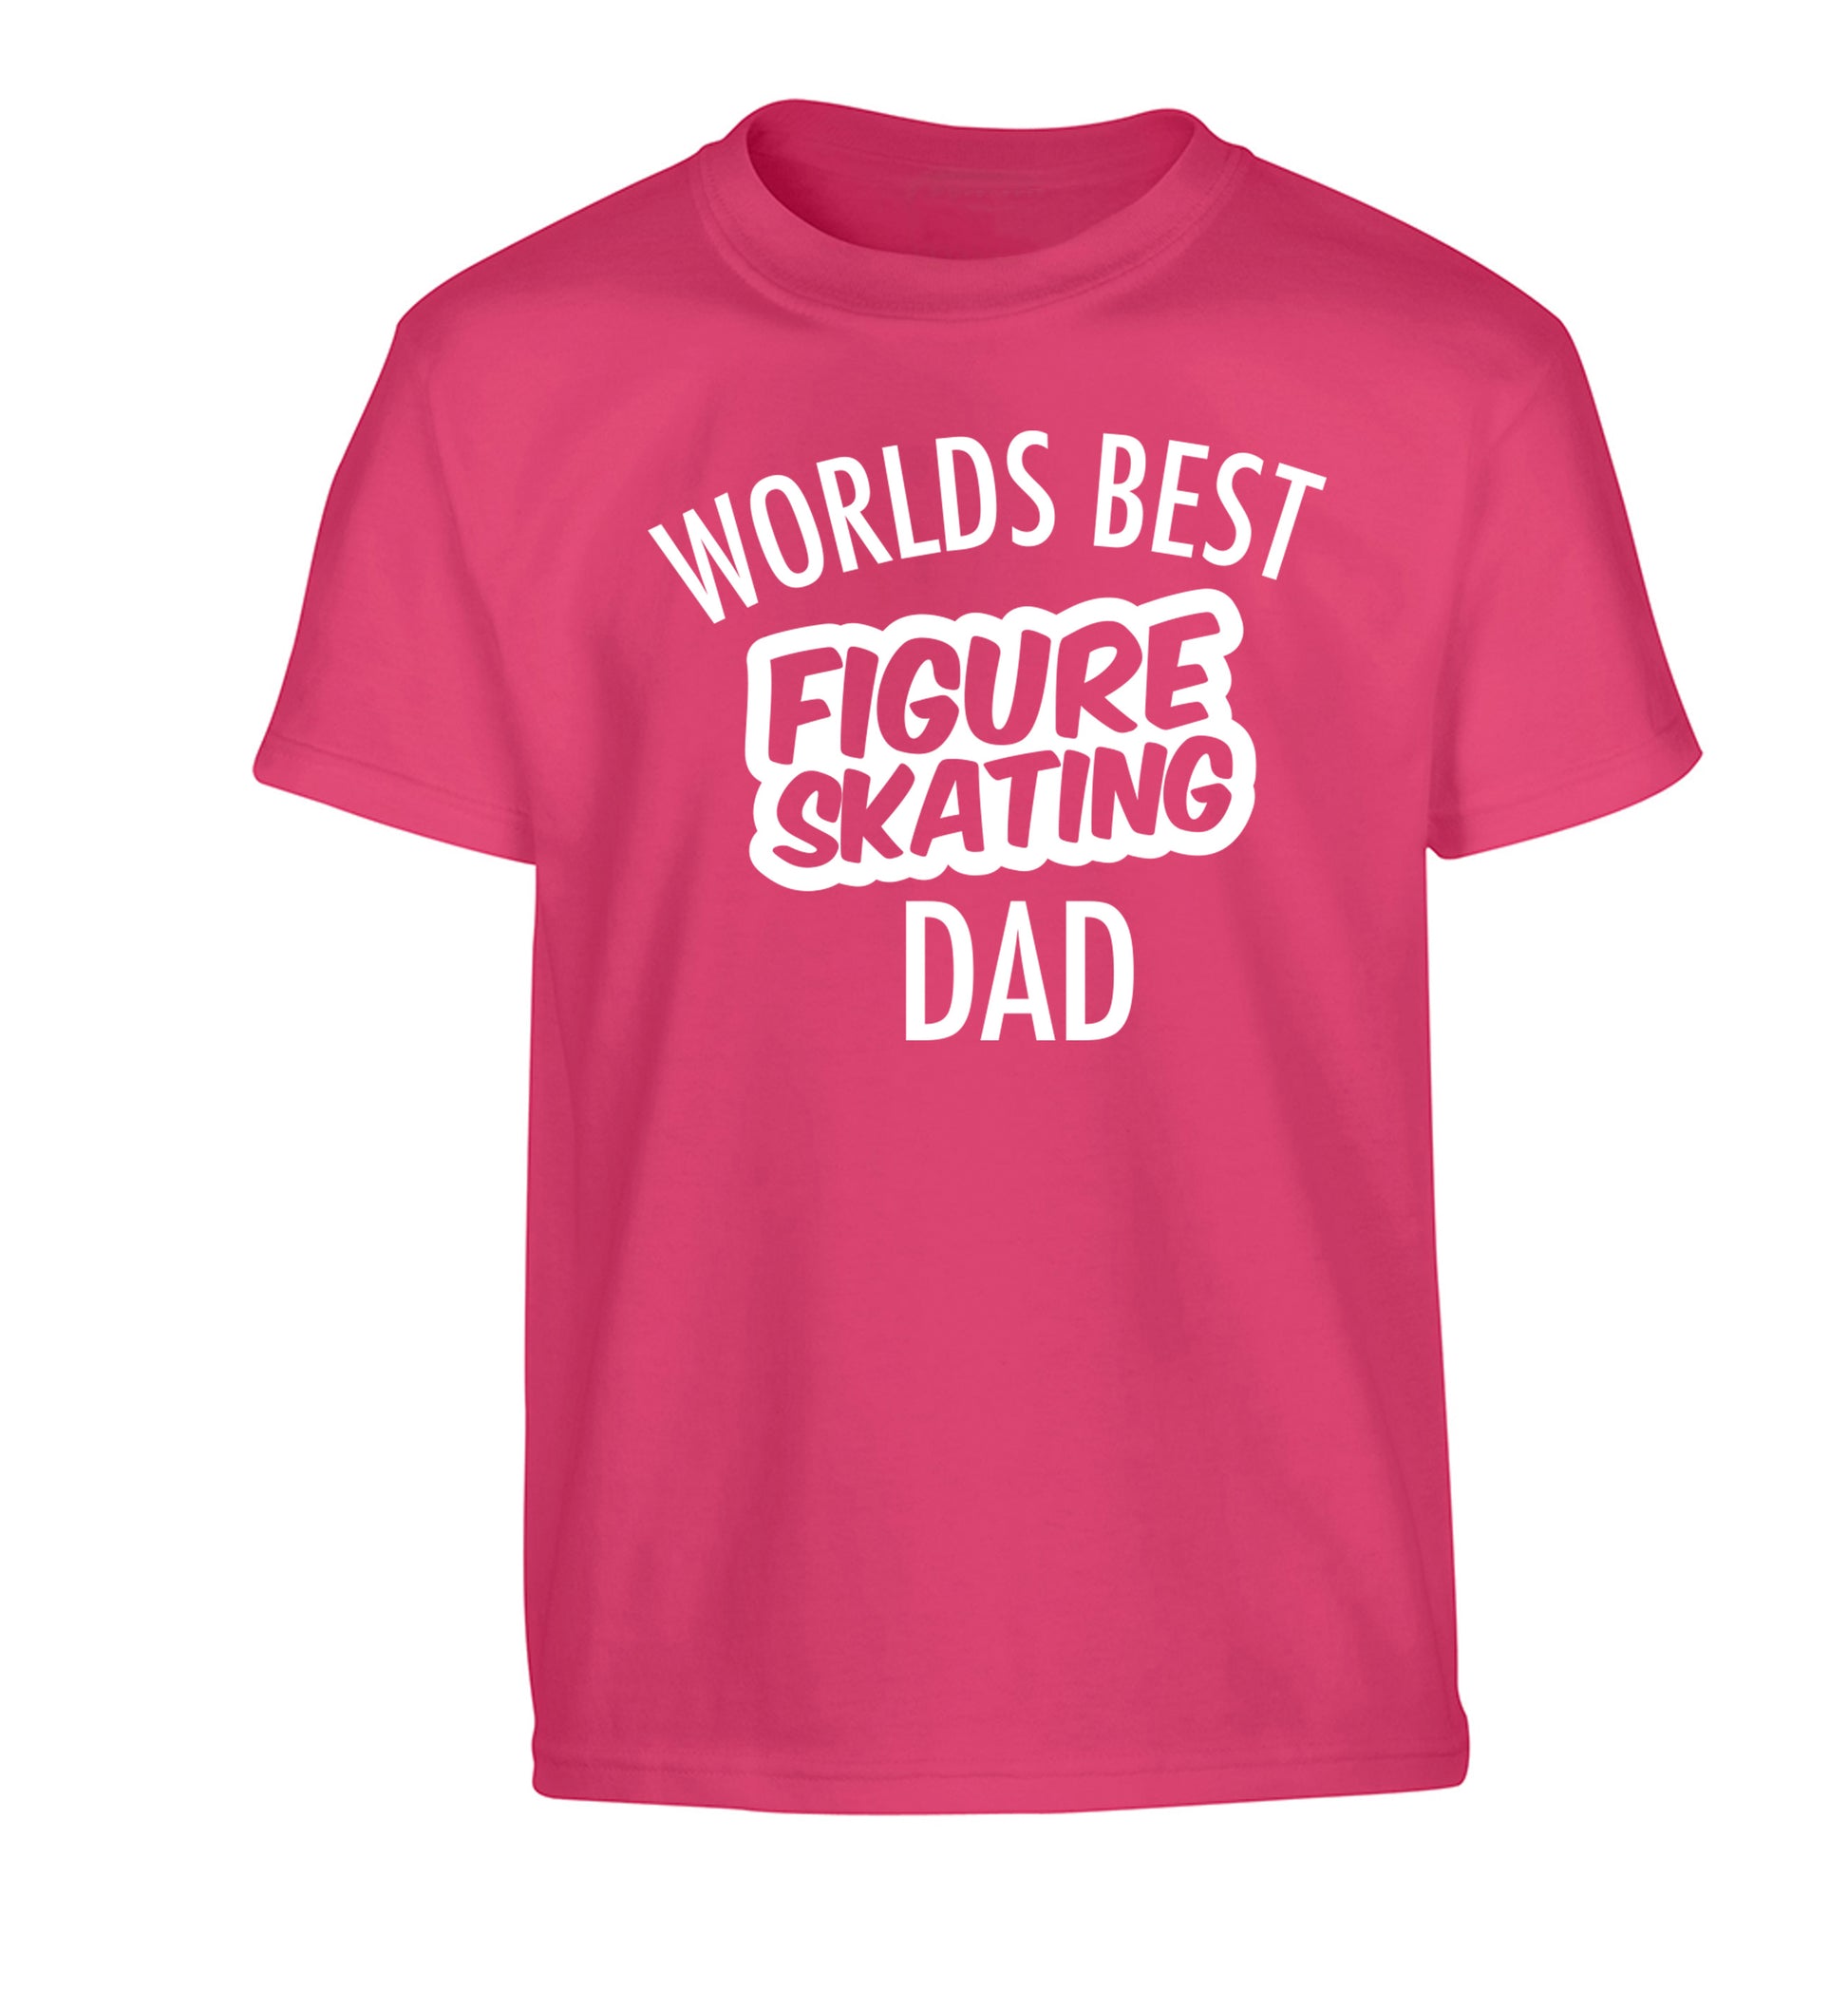 Worlds best figure skating dad Children's pink Tshirt 12-14 Years